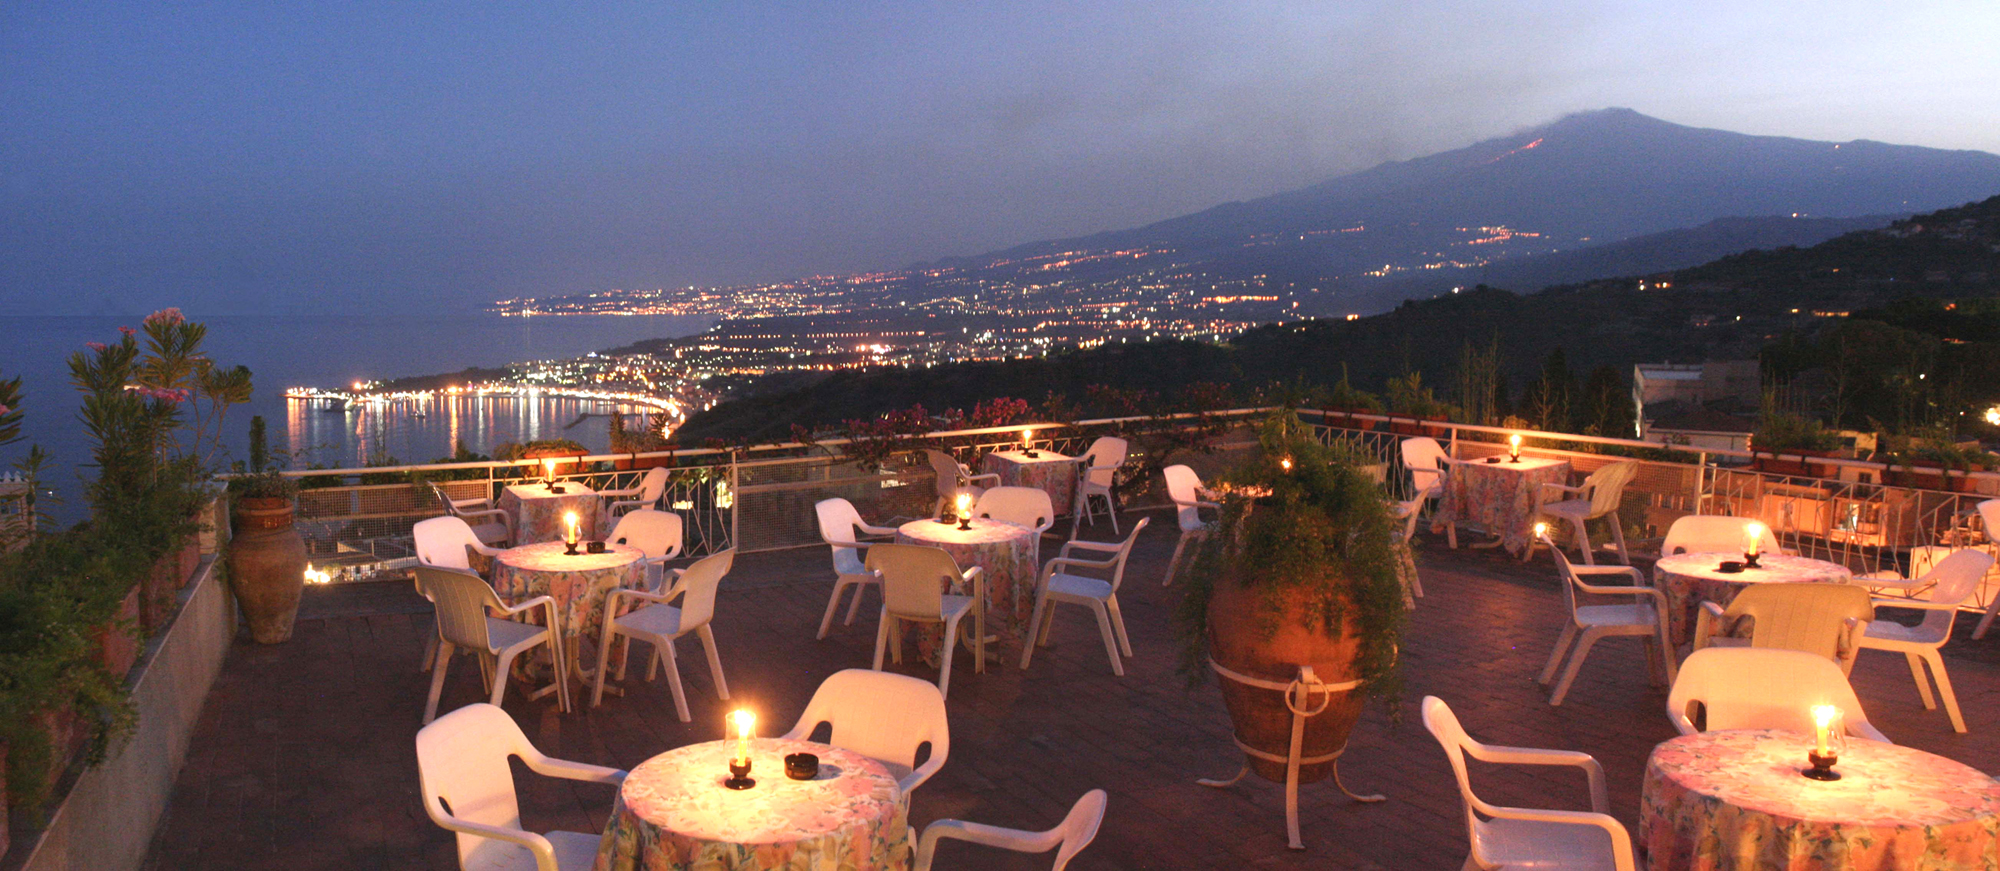 Hotel Mediterranee, Galleria fotografica del piscina con vista della baia di Taormina e del Vulcano Etna.